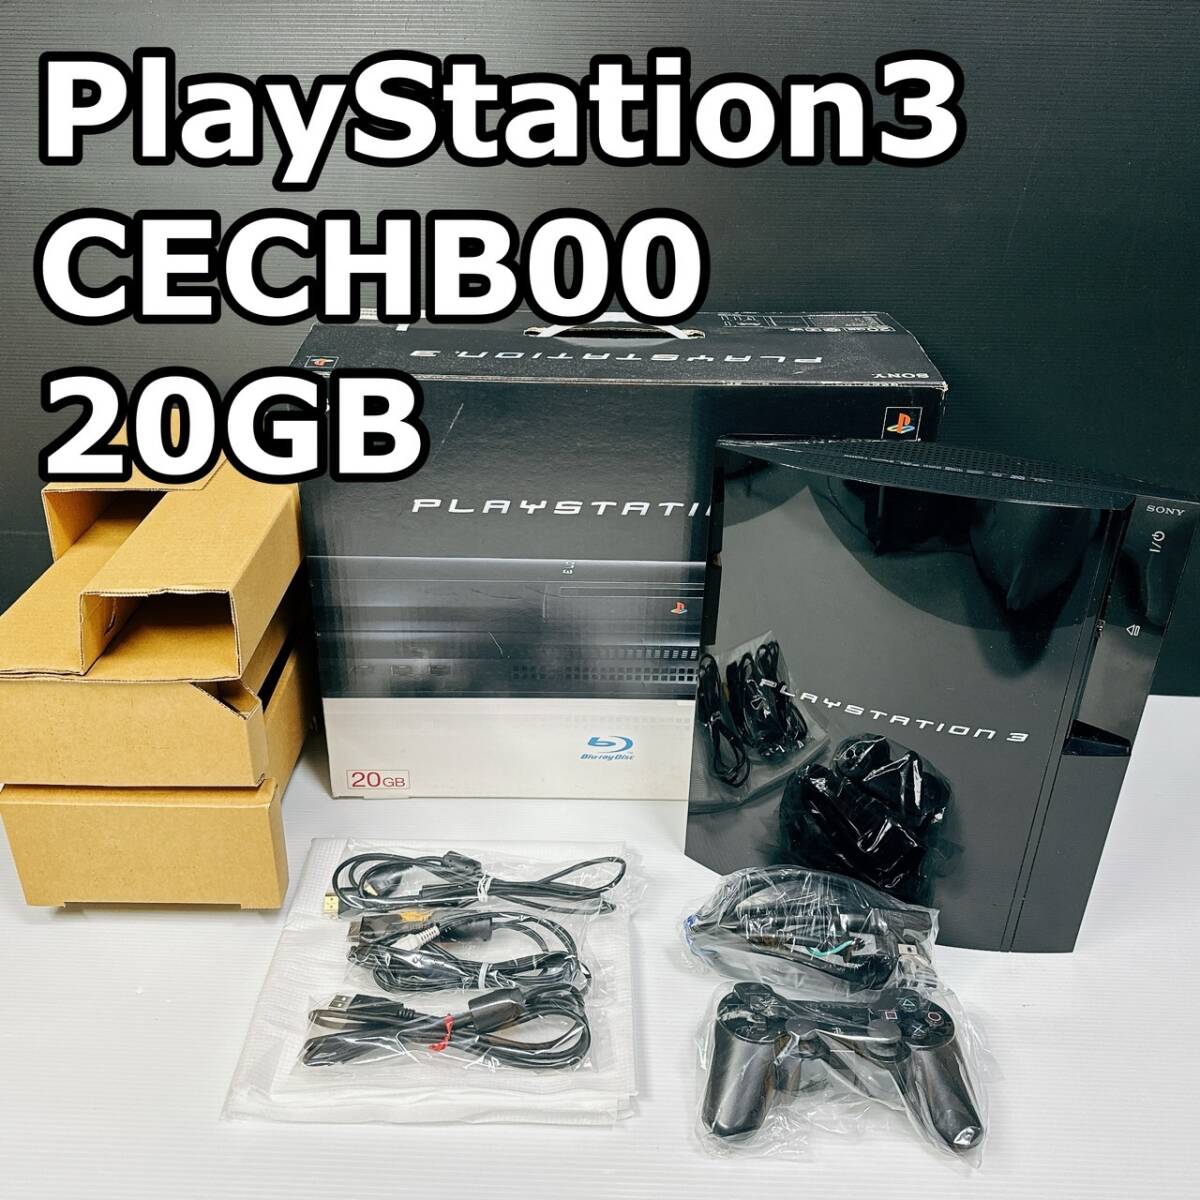 通電確認済み PS3 プレイステーション3 PlayStation3 CECHB00 20GB ソニー SONY 本体 外箱/内箱/HDMI/コントローラー付属 美品/ジャンク